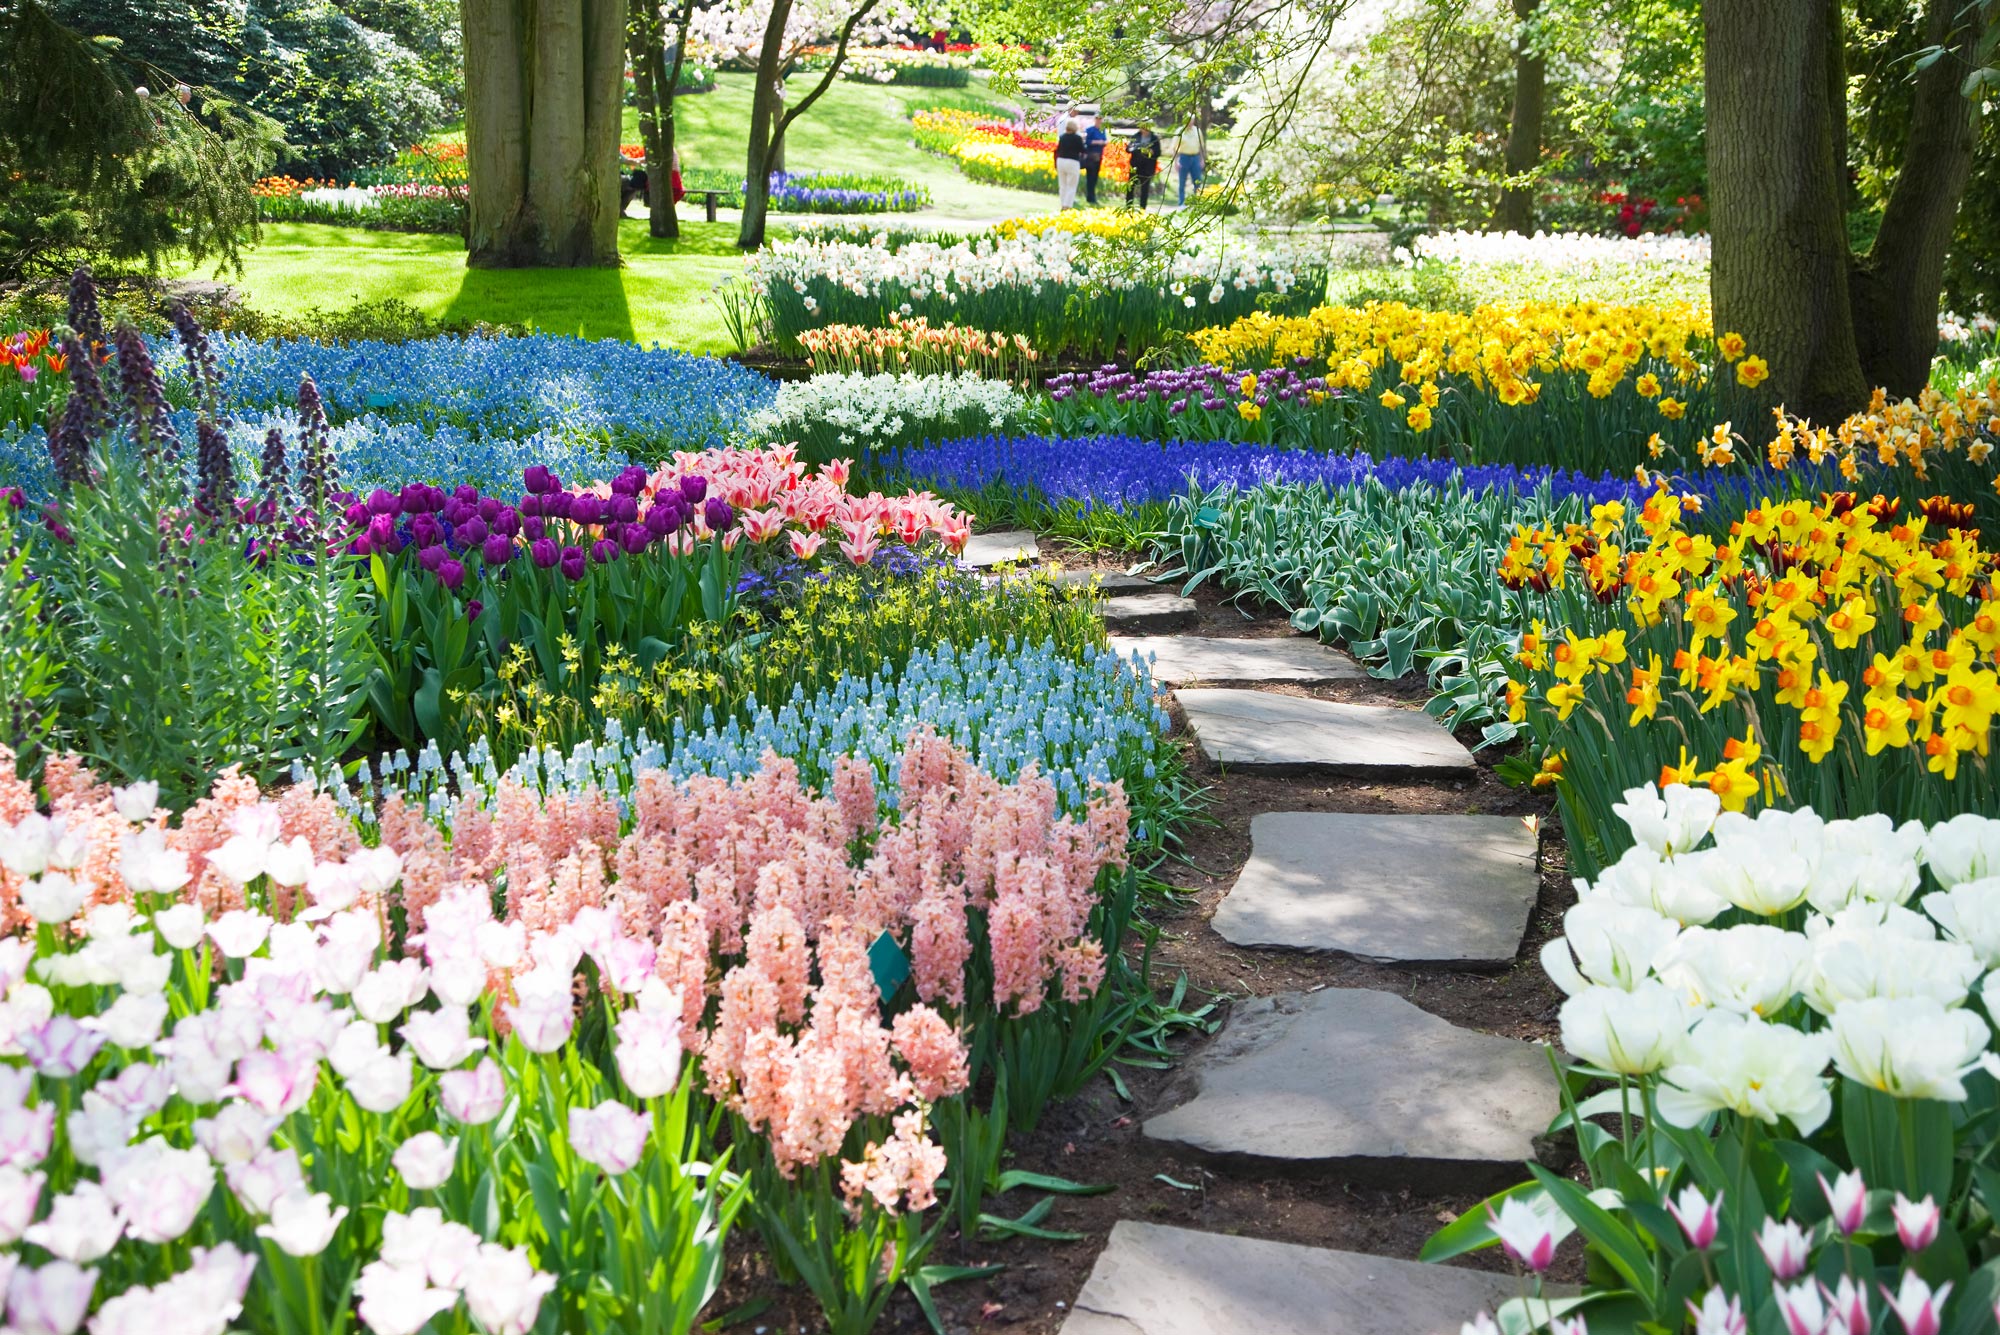 A photo of a Dutch flower garden